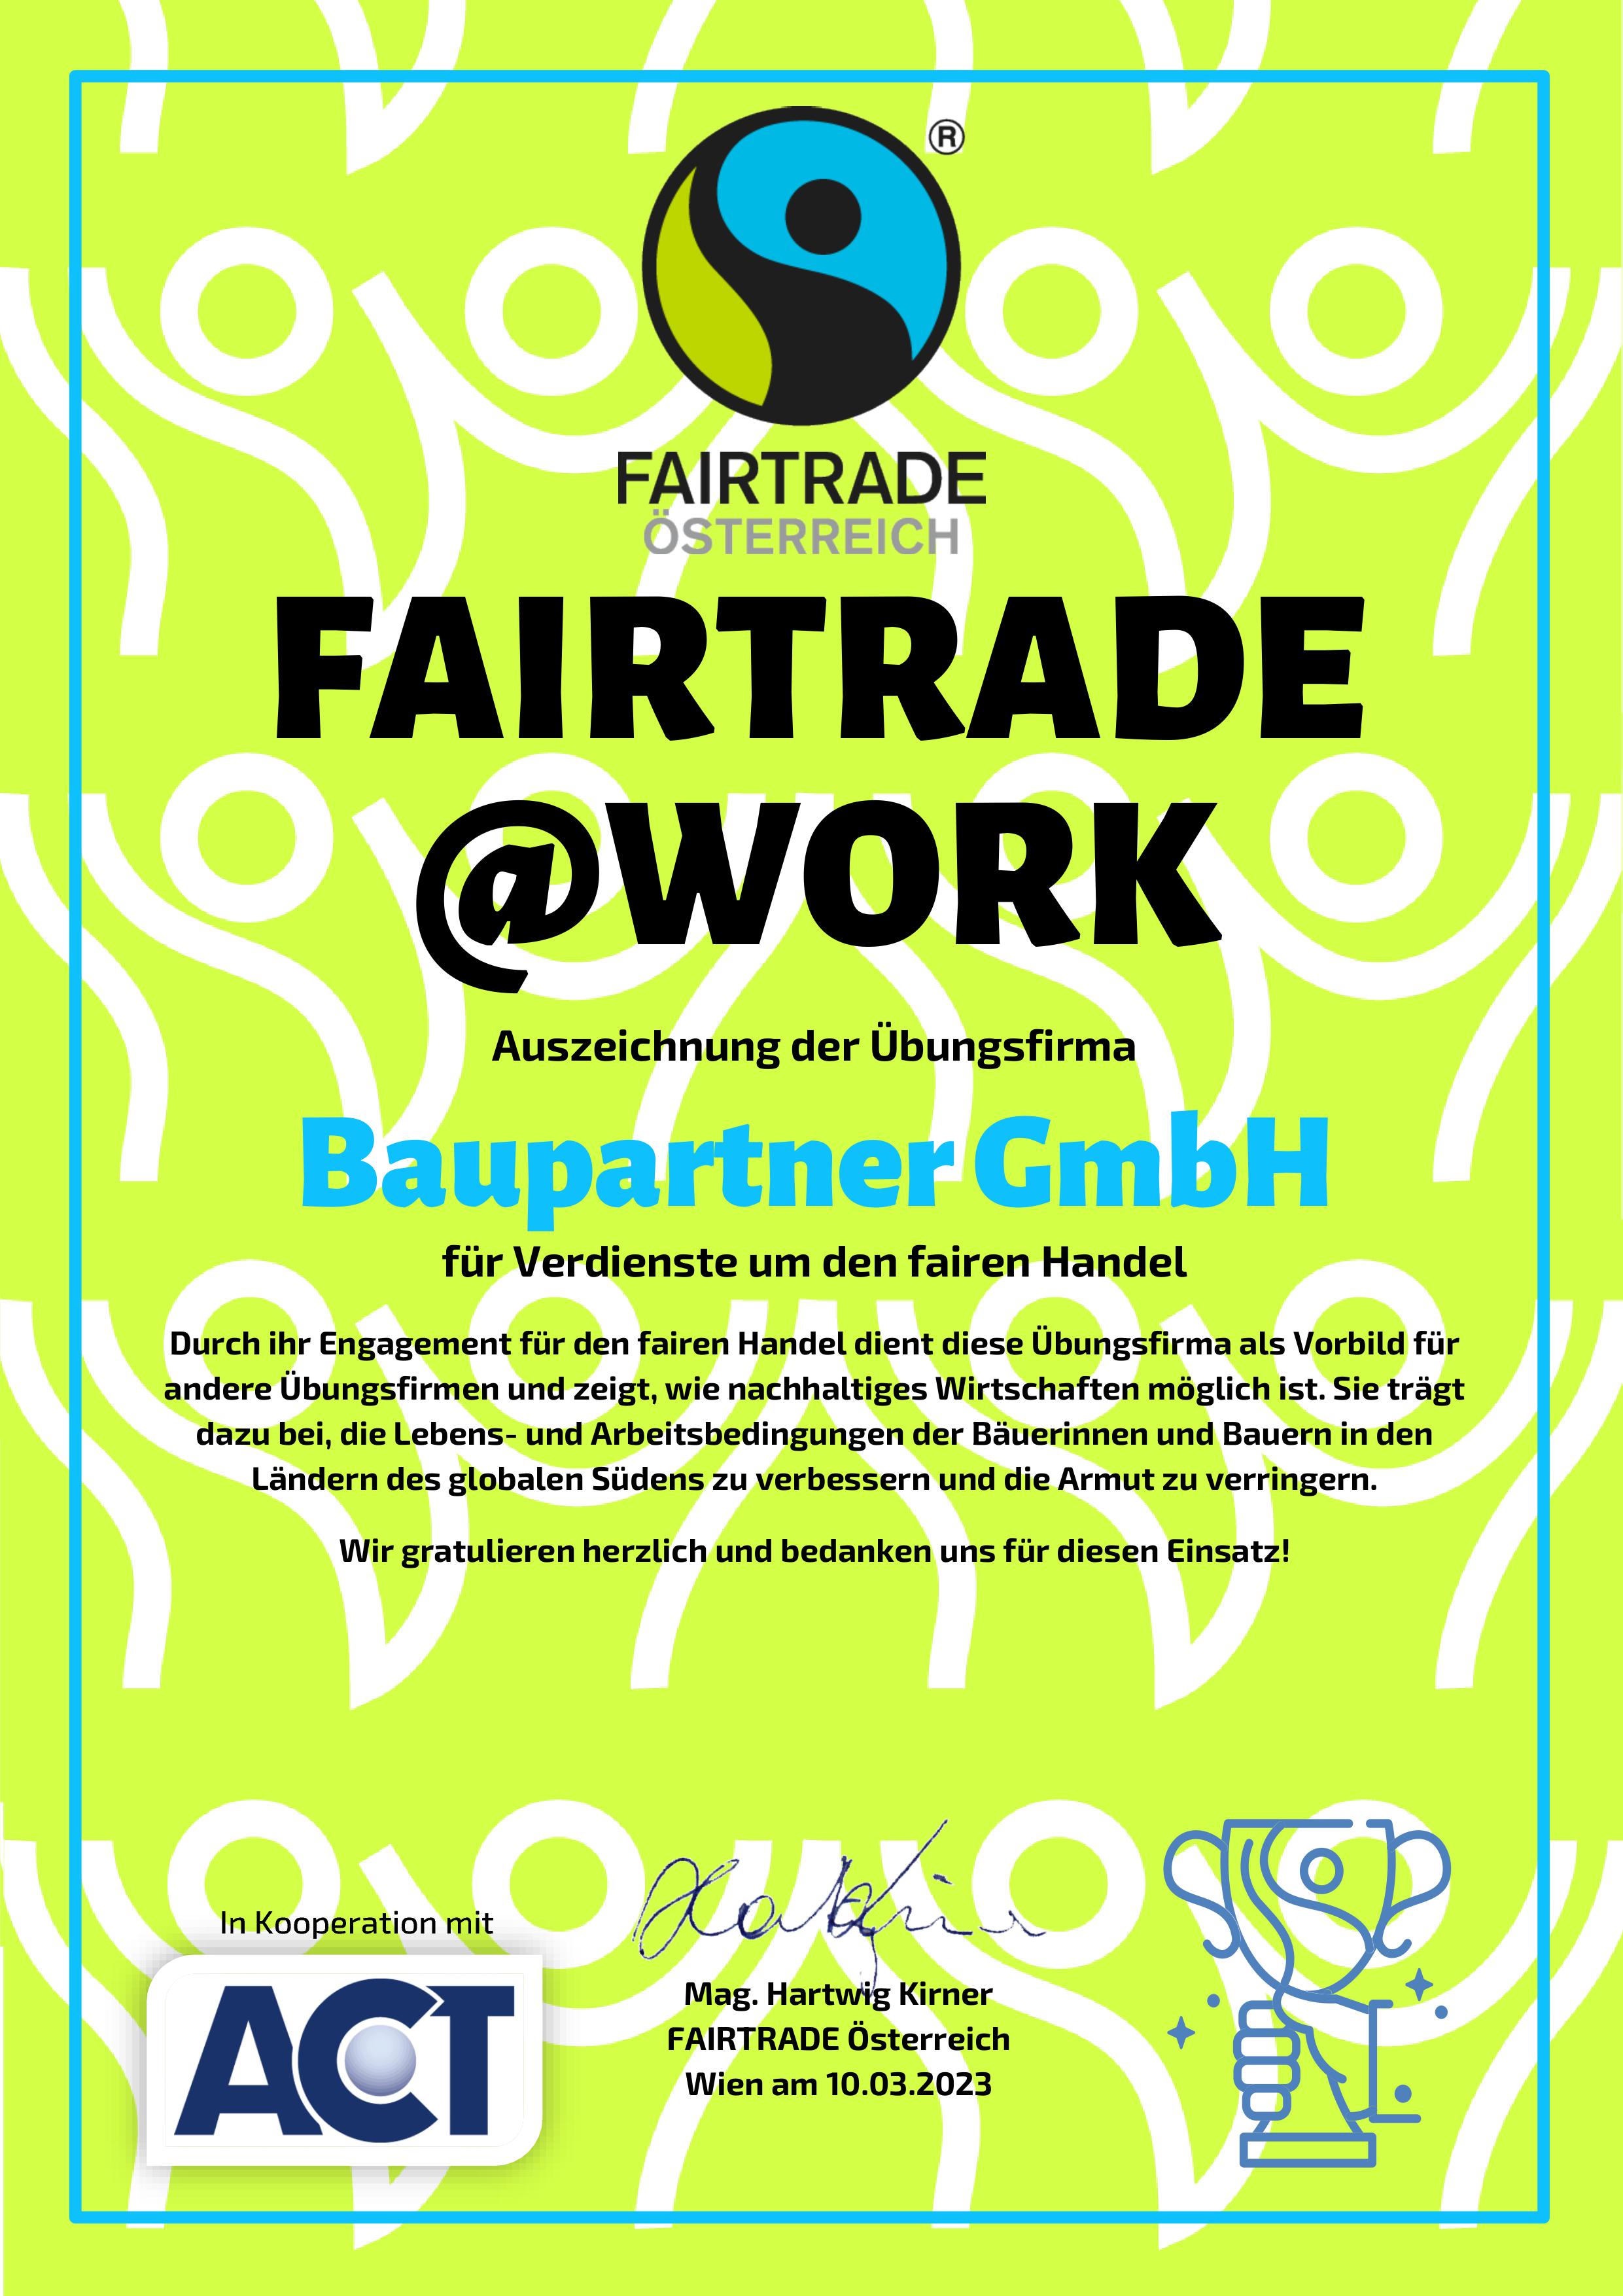 FAIRTRADEWork Auszeichnung Baupartner GmbH